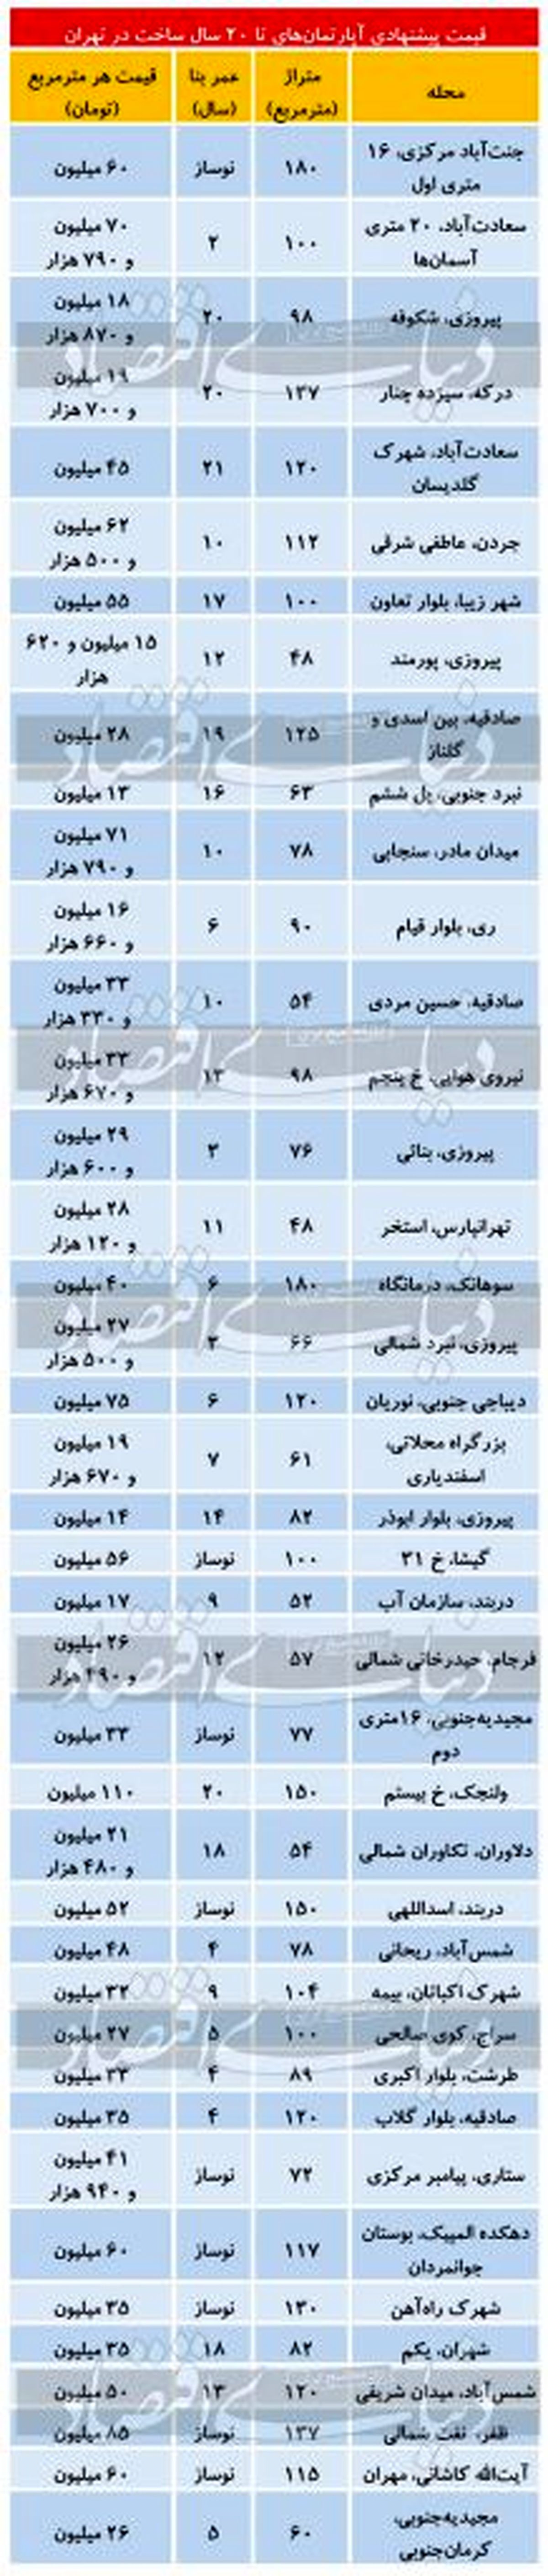 قیمت آپارتمان های زیر 20 سال در مناطق مختلف تهران مهر ماه 99 + جدول